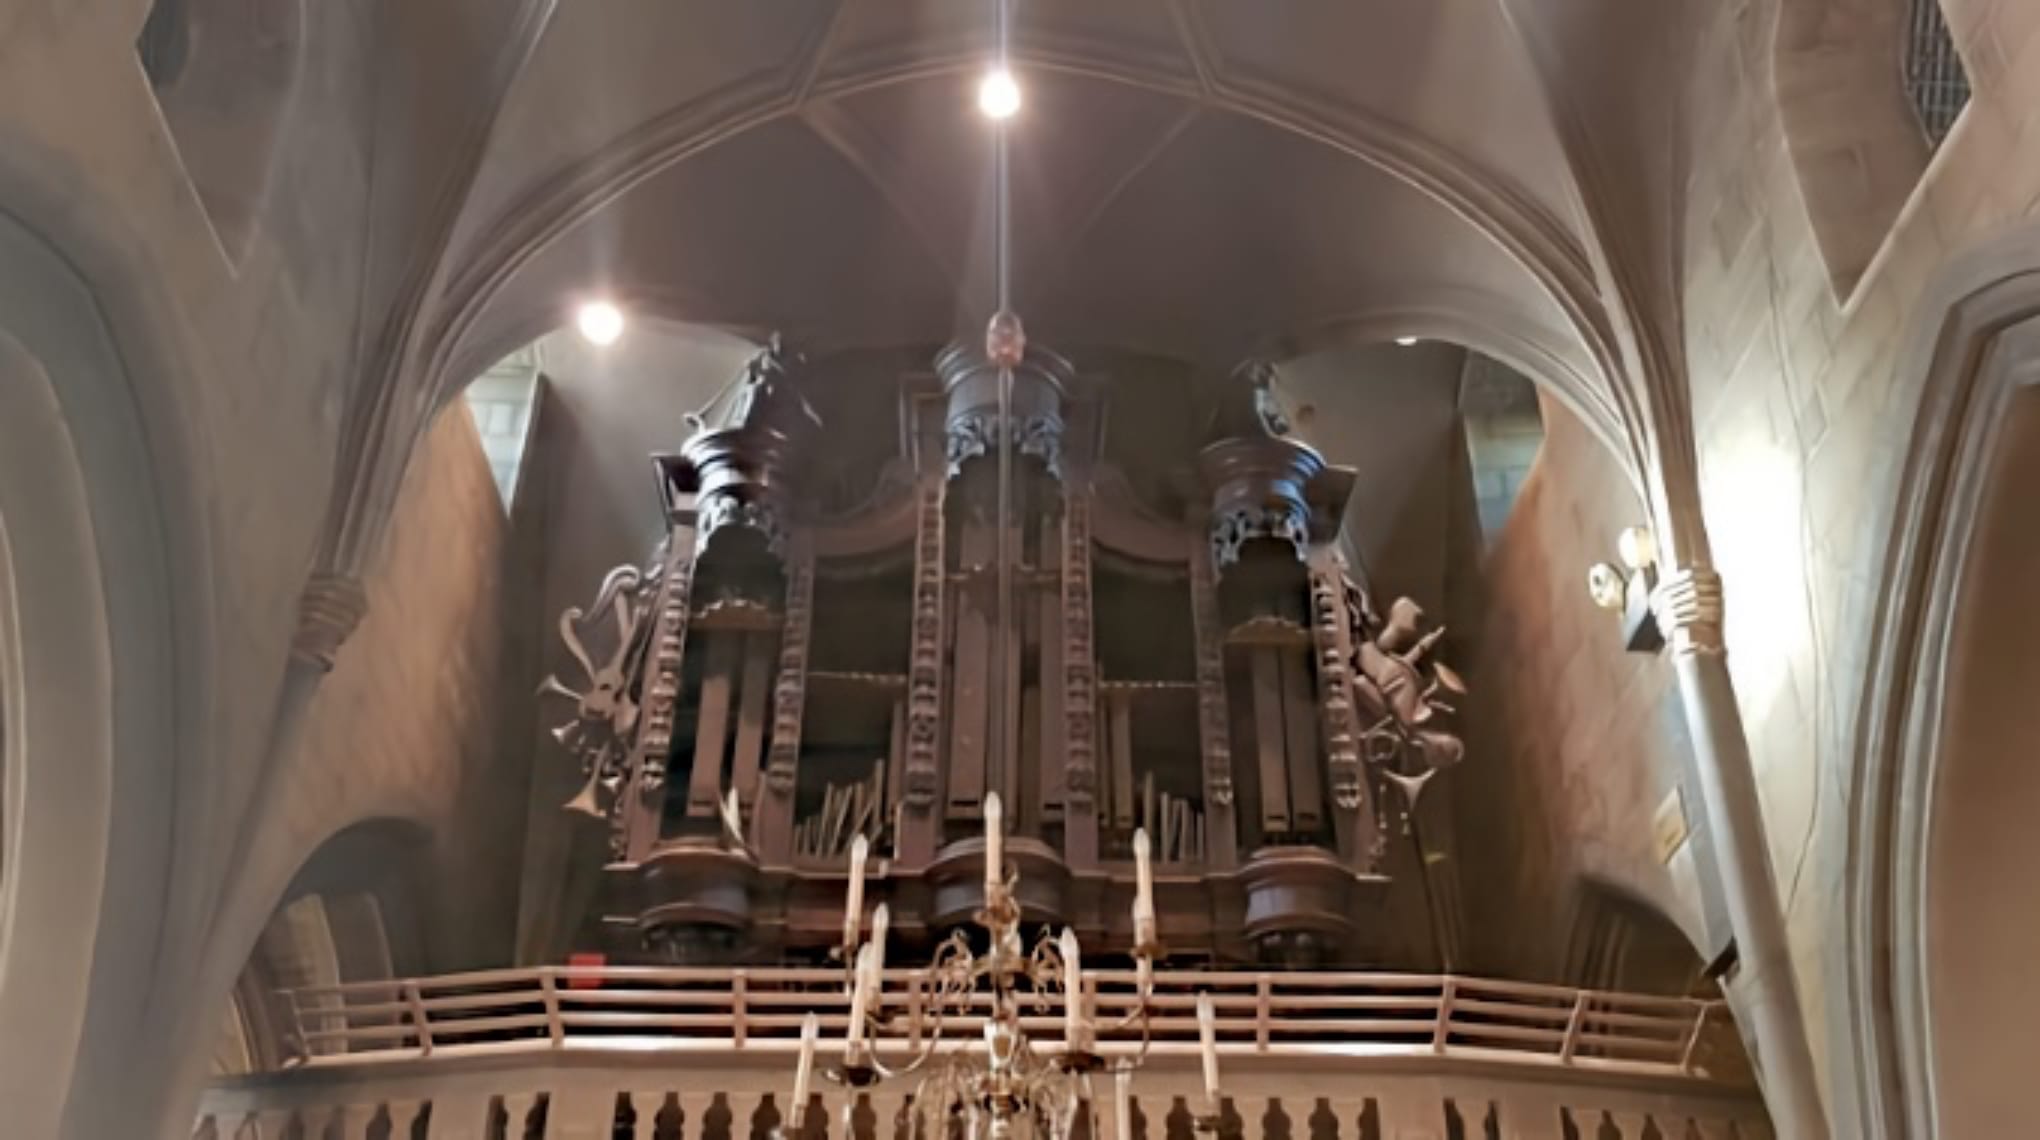 brigidakerk noorbeek orgel brand 2021